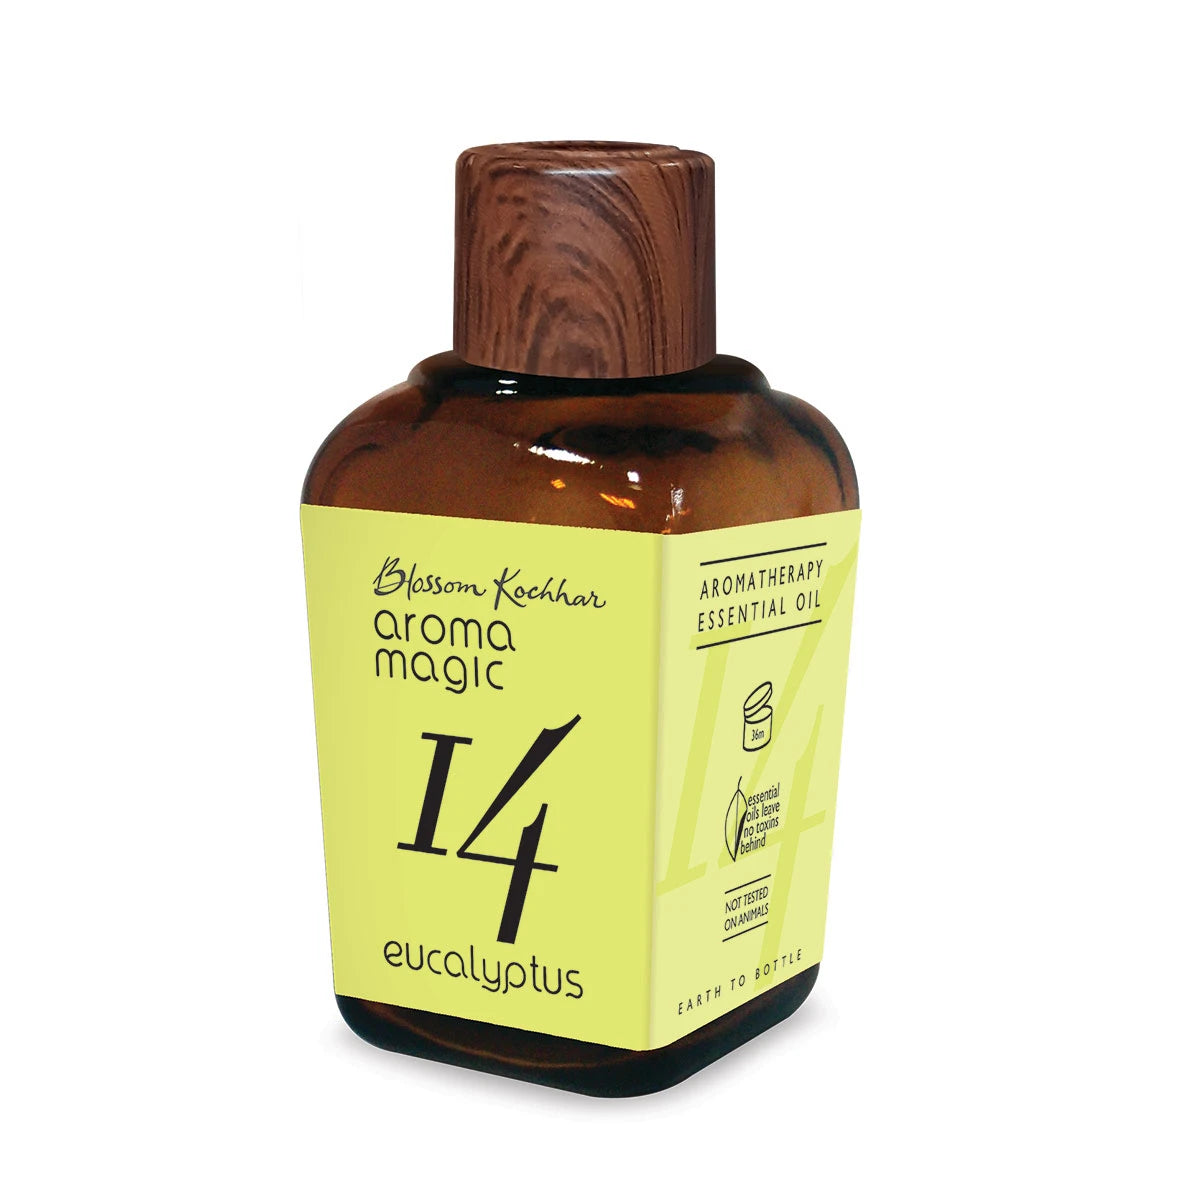 Aroma Magic Eucalyptus oil